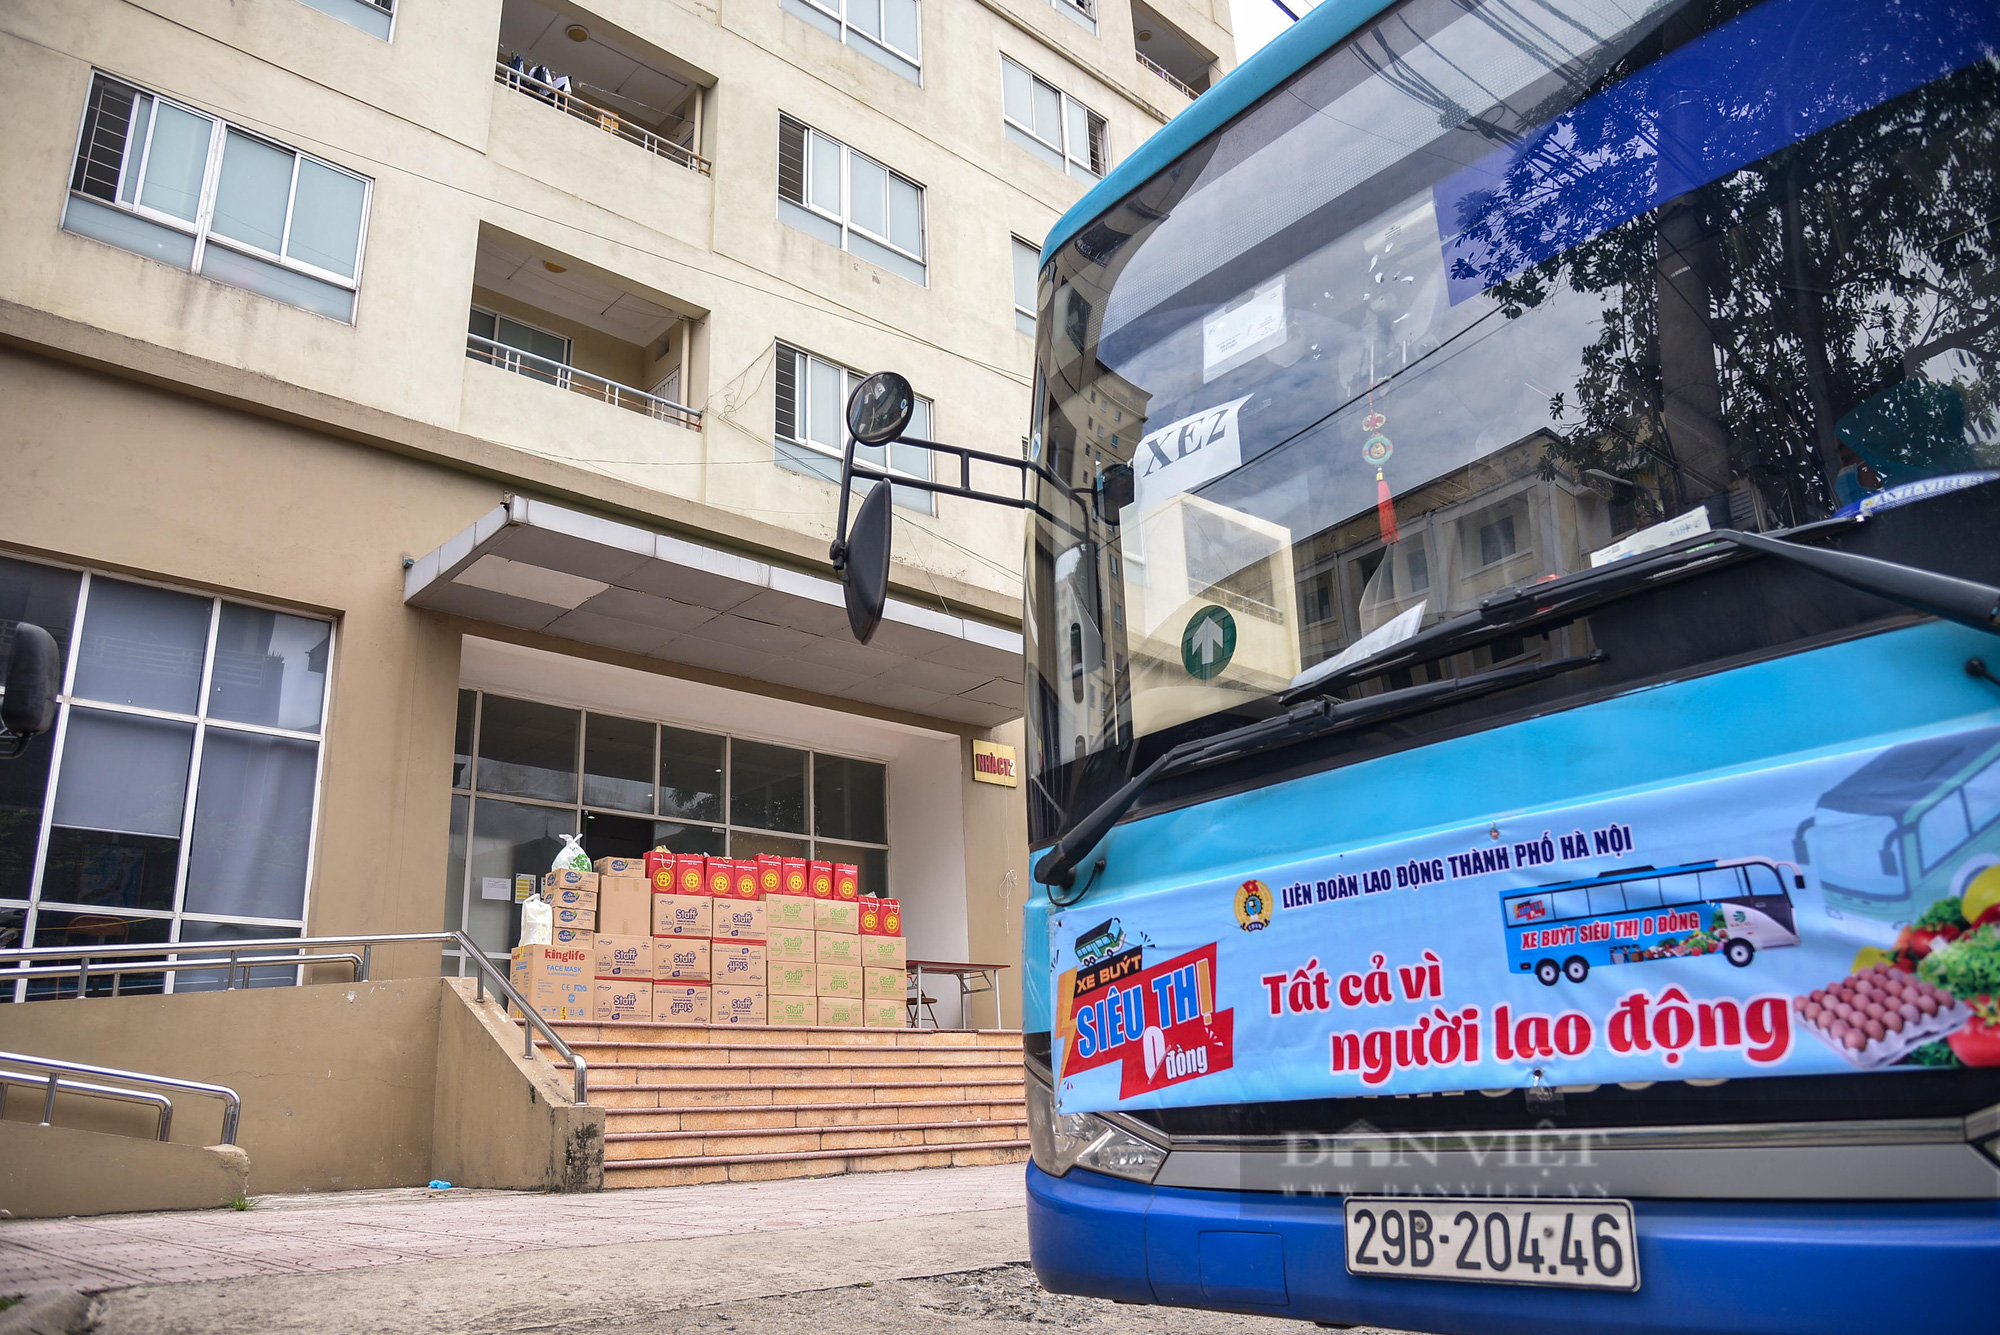 Cận cảnh “Xe buýt siêu thị 0 đồng” đầu tiên phục vụ CNLĐ khu công nghiệp Hà Nội - Ảnh 6.